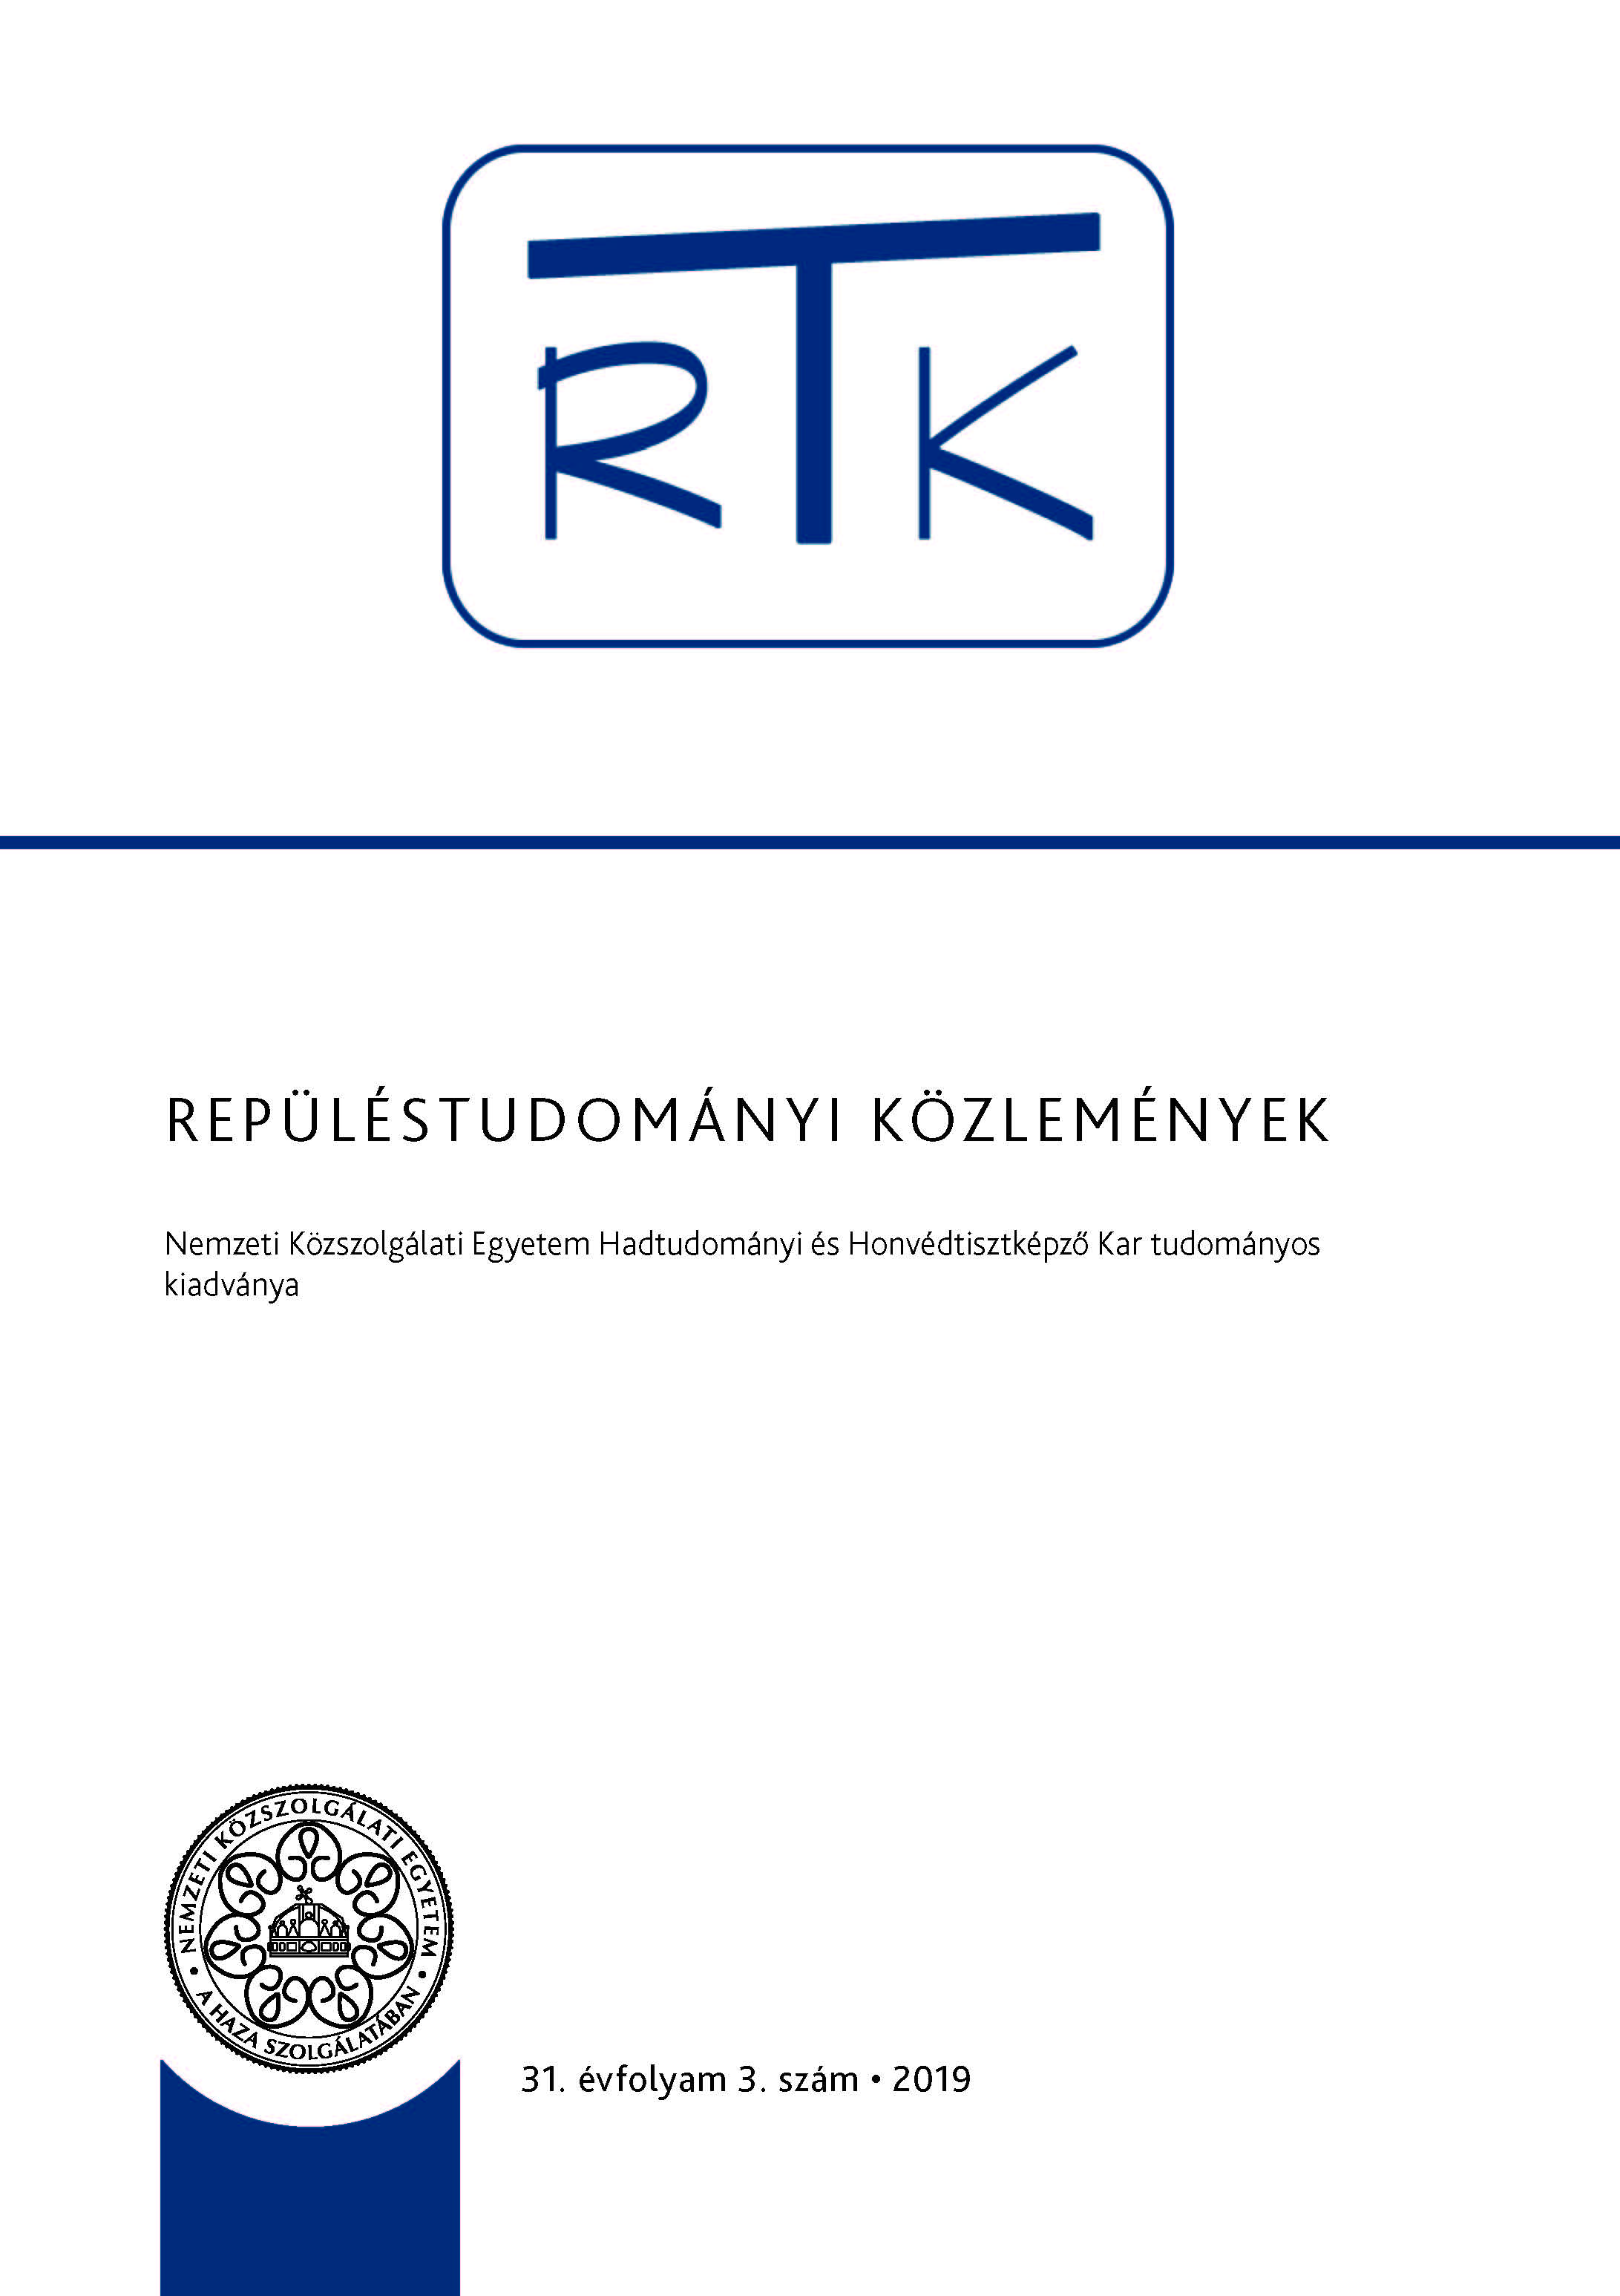 RTK 2019. 3. szám 